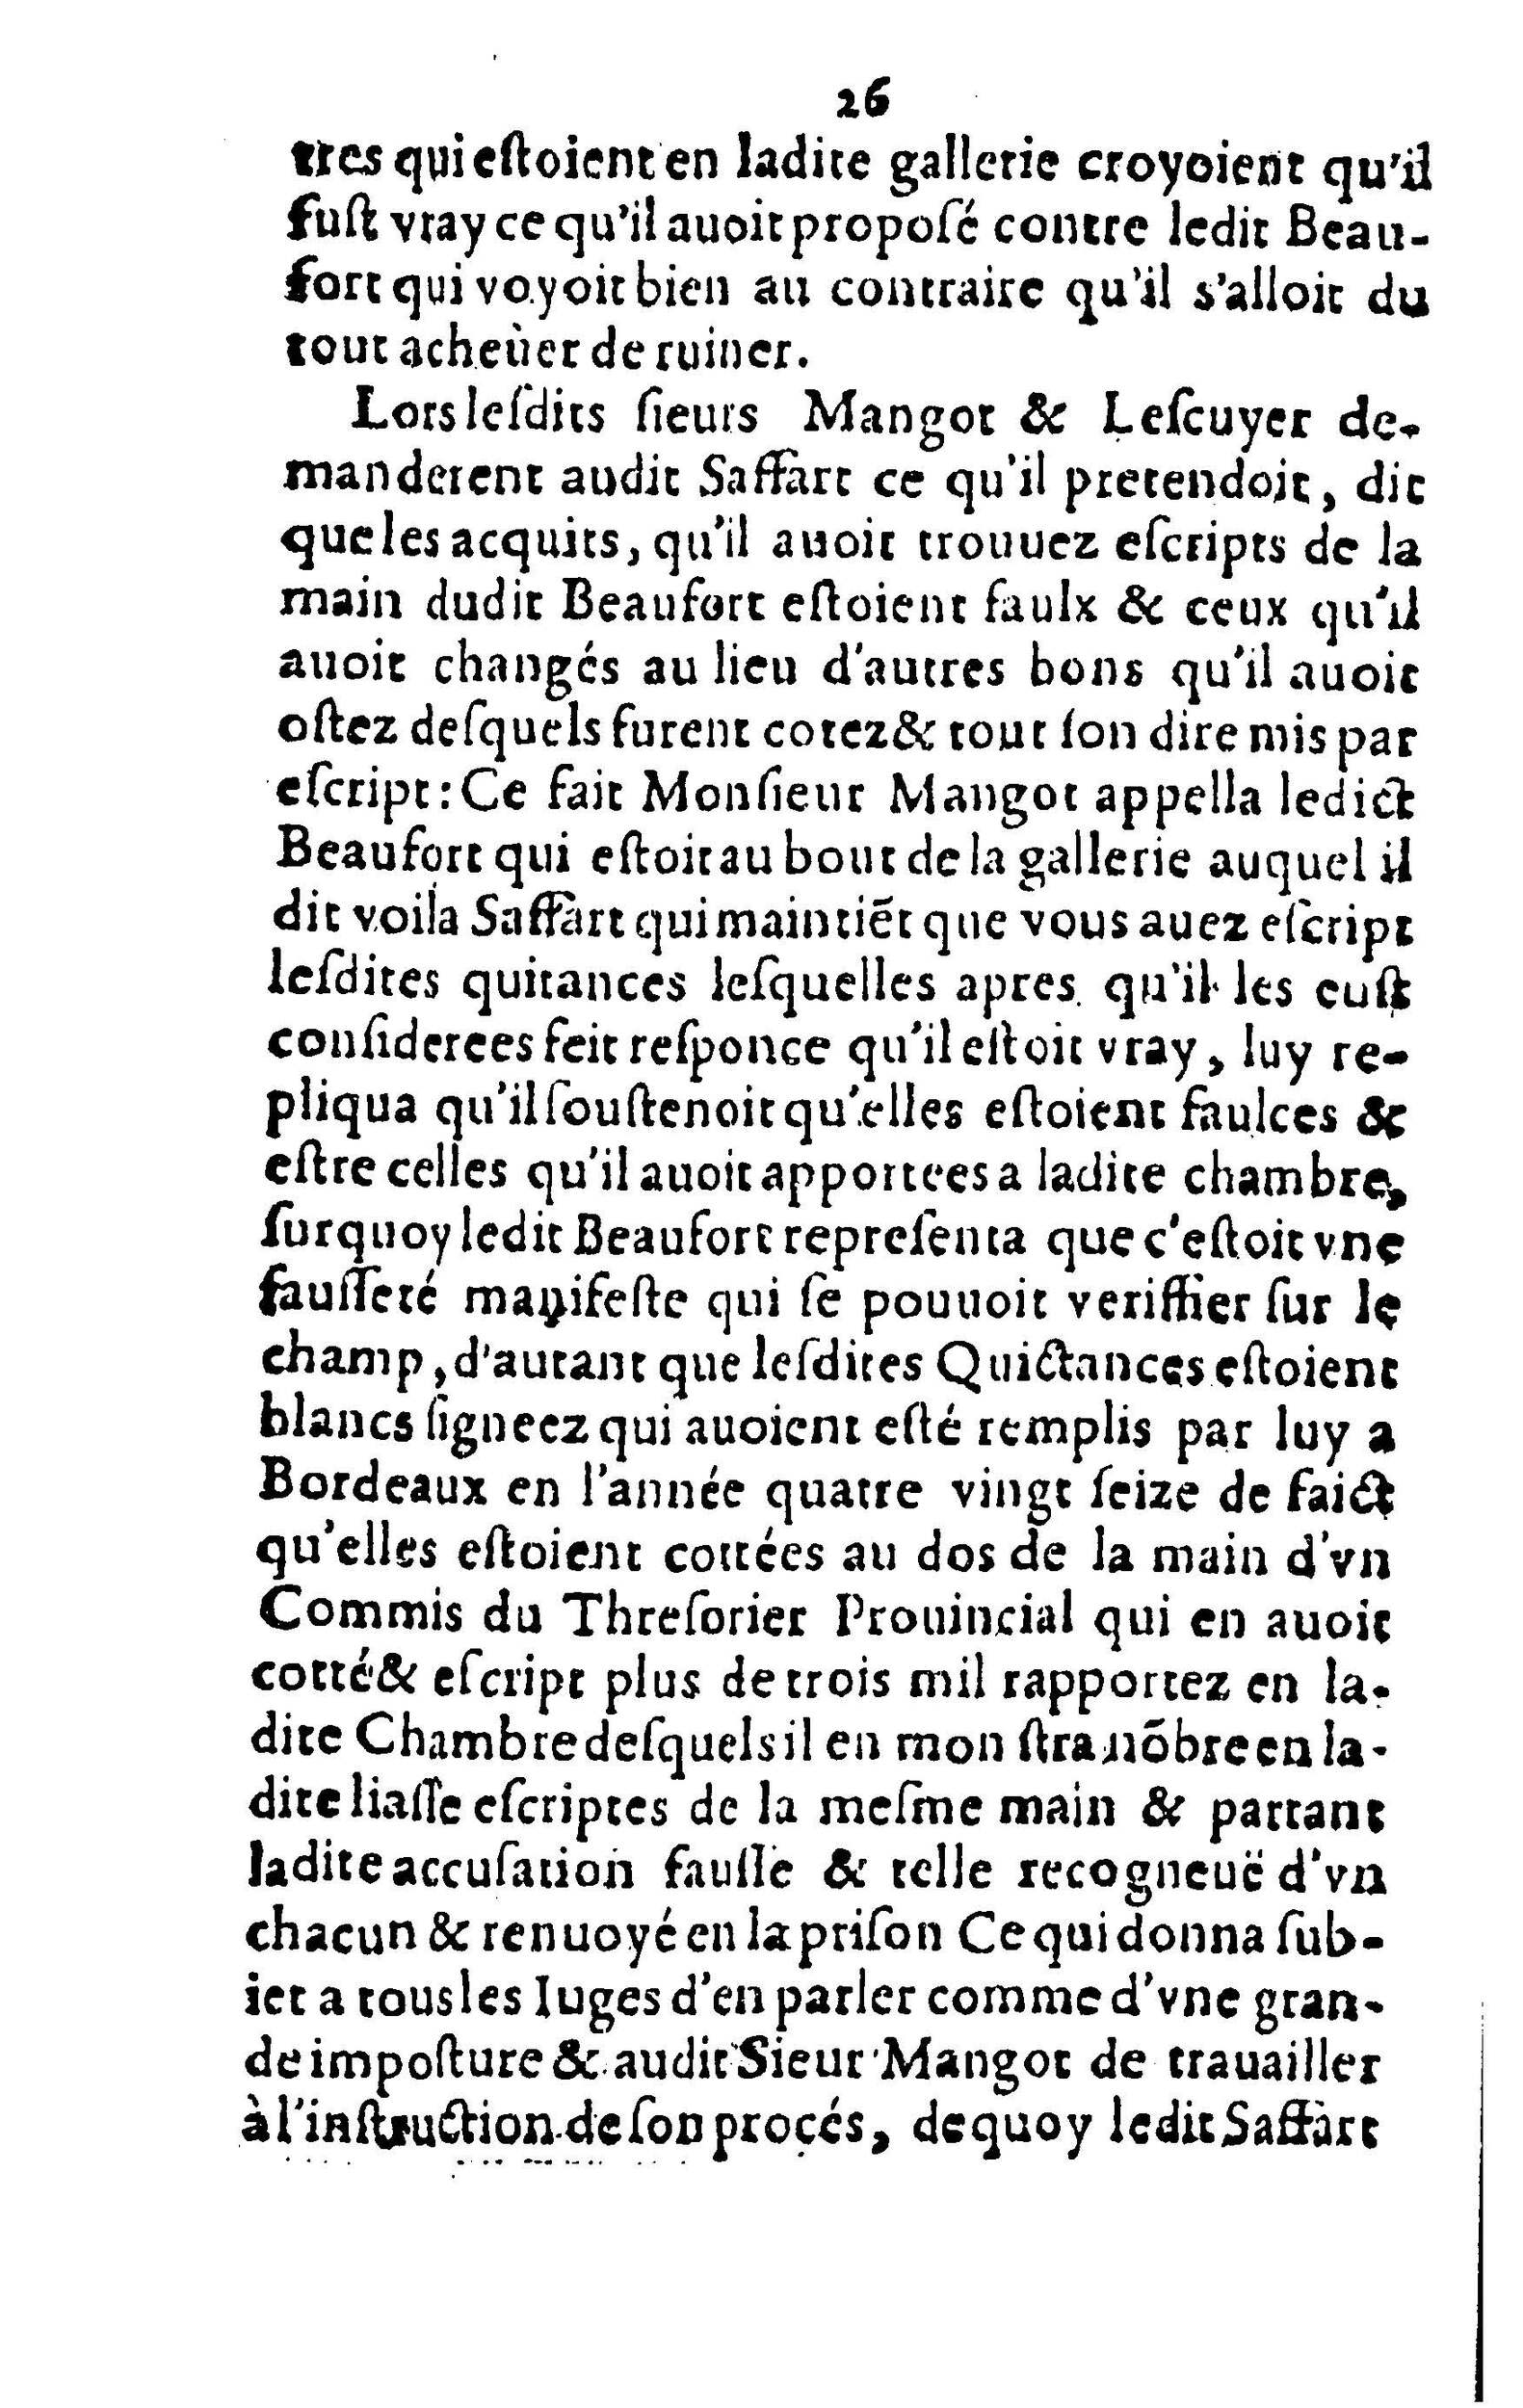 1615 - s.n. - Trésor des trésors de France - BnF_Page_025.jpg